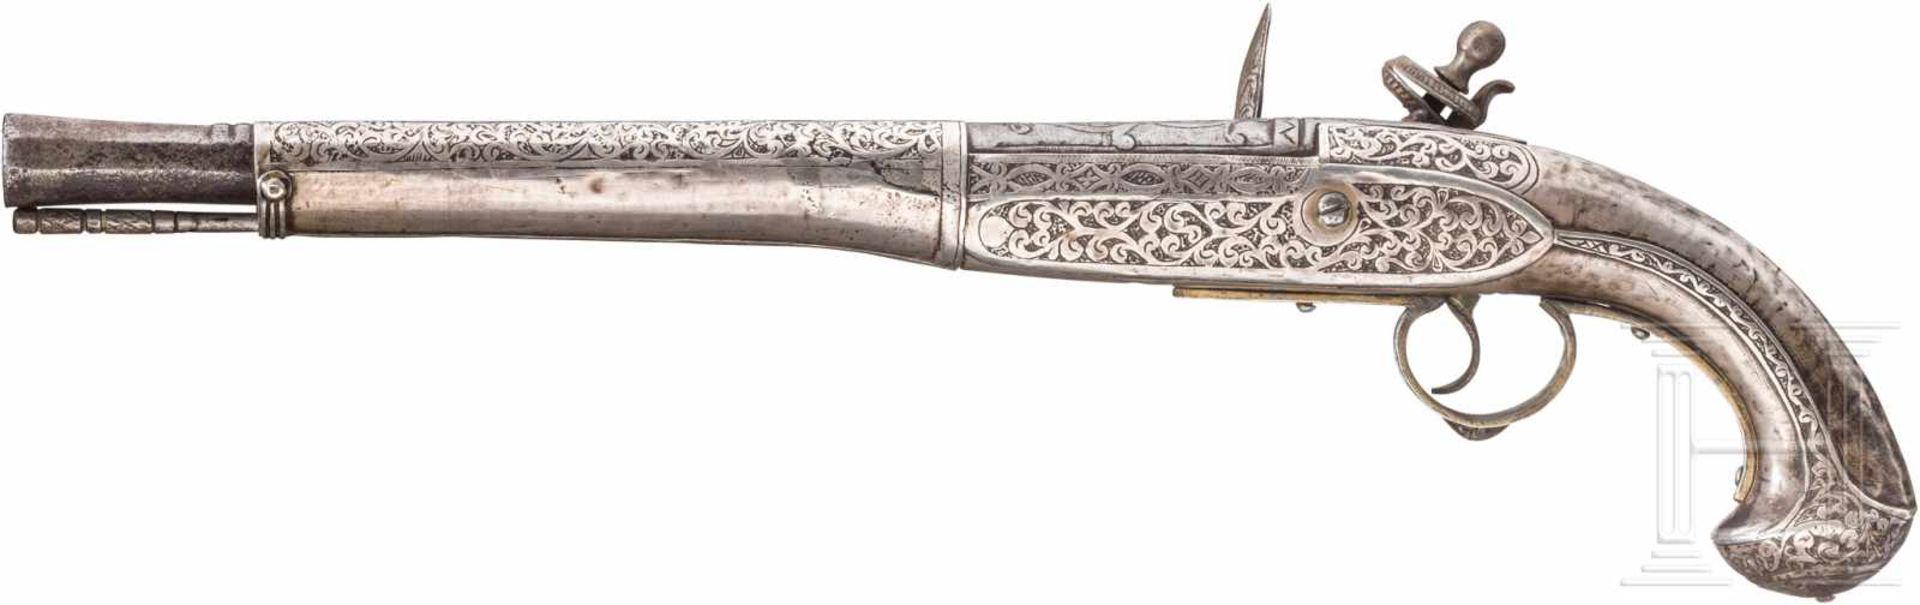 Silbermontierte Steinschlosspistole, balkantürkisch, 19. Jhdt.Runder, an der Mündung achtkantig - Bild 2 aus 2